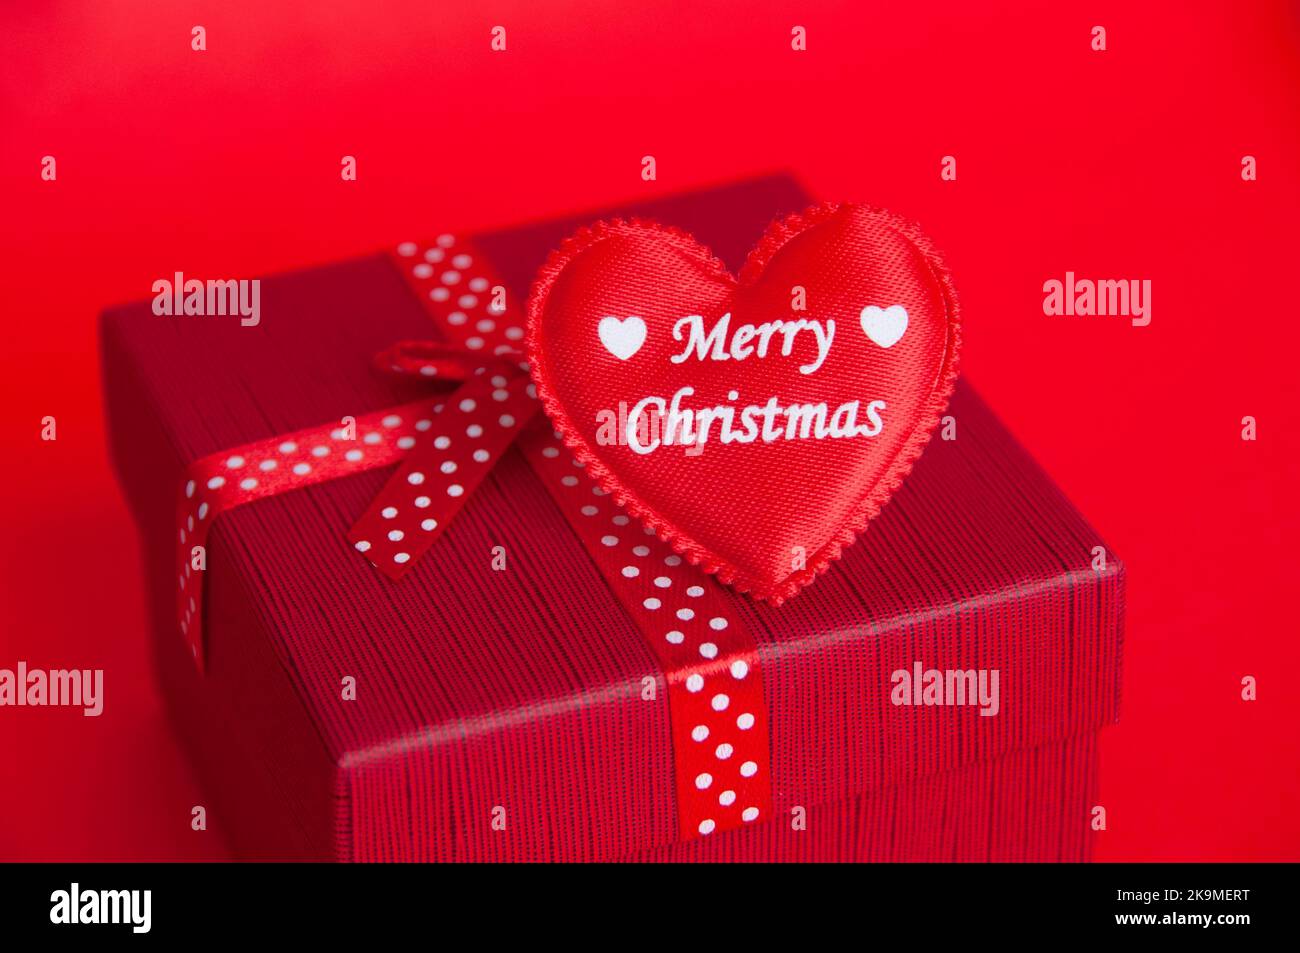 Frohe Weihnachten Wünsche auf rote Herzform auf Weihnachtsgeschenk. Weihnachtszeit-Konzept. Stockfoto